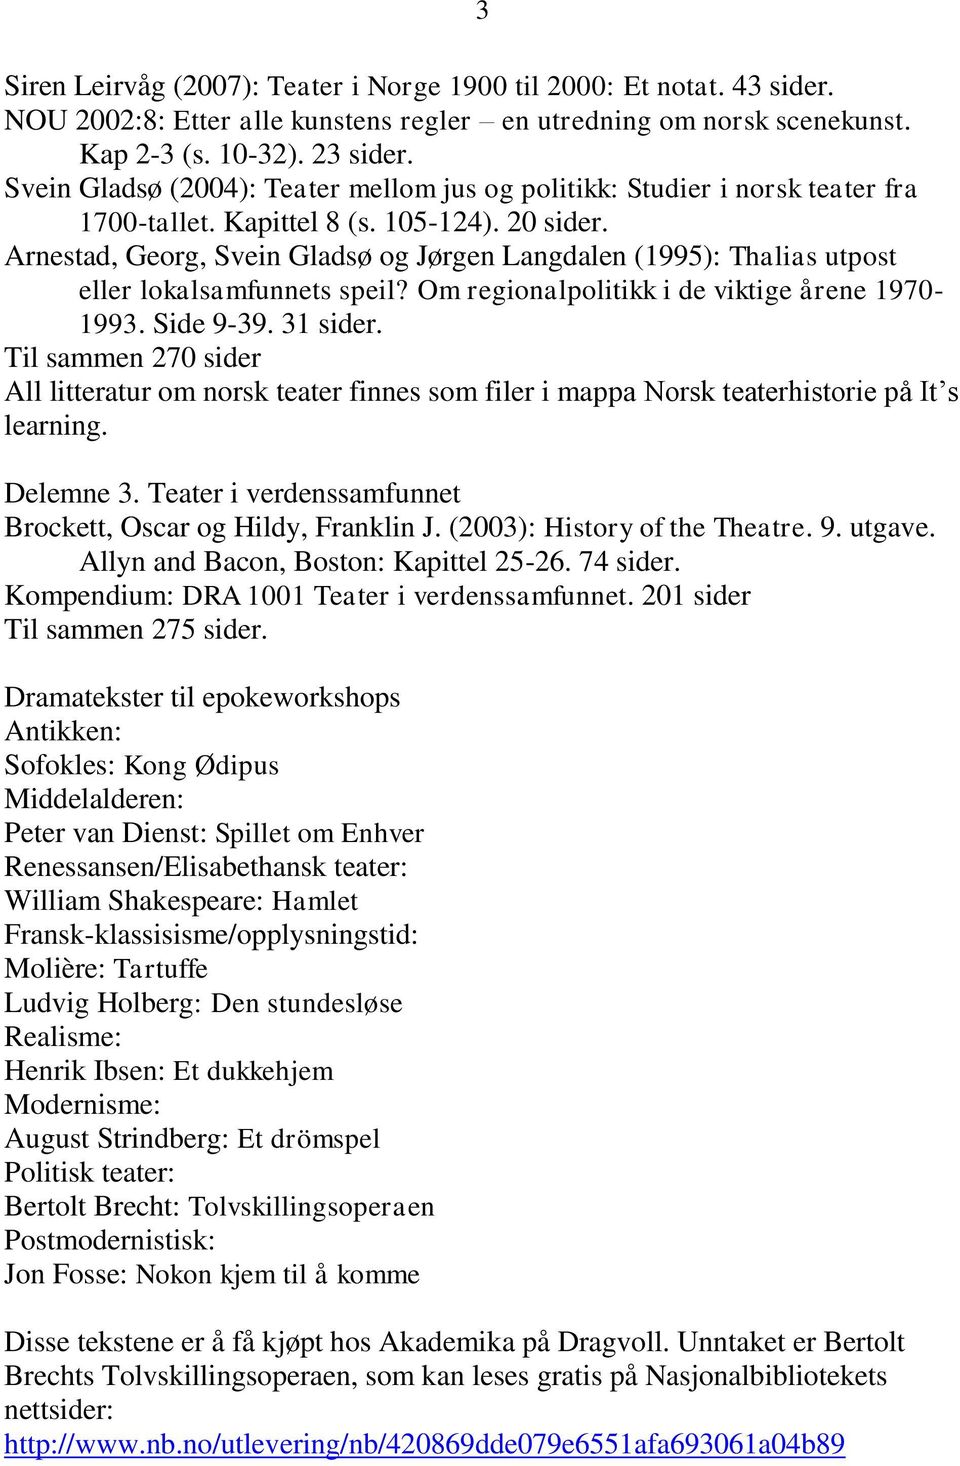 Arnestad, Georg, Svein Gladsø og Jørgen Langdalen (1995): Thalias utpost eller lokalsamfunnets speil? Om regionalpolitikk i de viktige årene 1970-1993. Side 9-39. 31 sider.